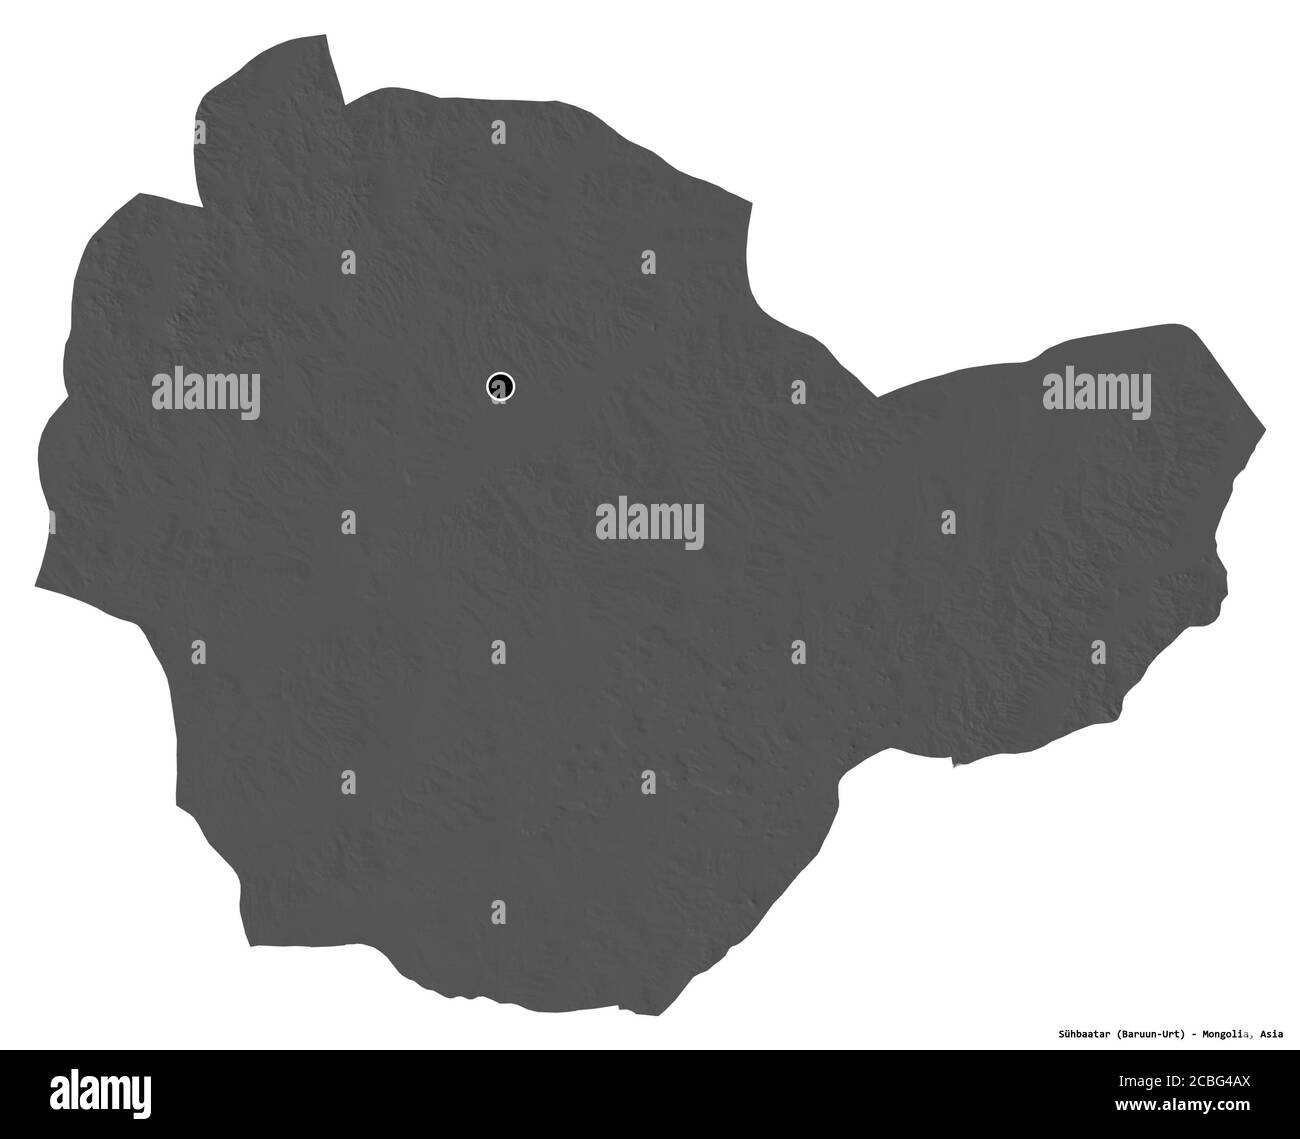 Forme de Sühbaatar, province de Mongolie, avec sa capitale isolée sur fond blanc. Carte d'élévation à deux niveaux. Rendu 3D Banque D'Images